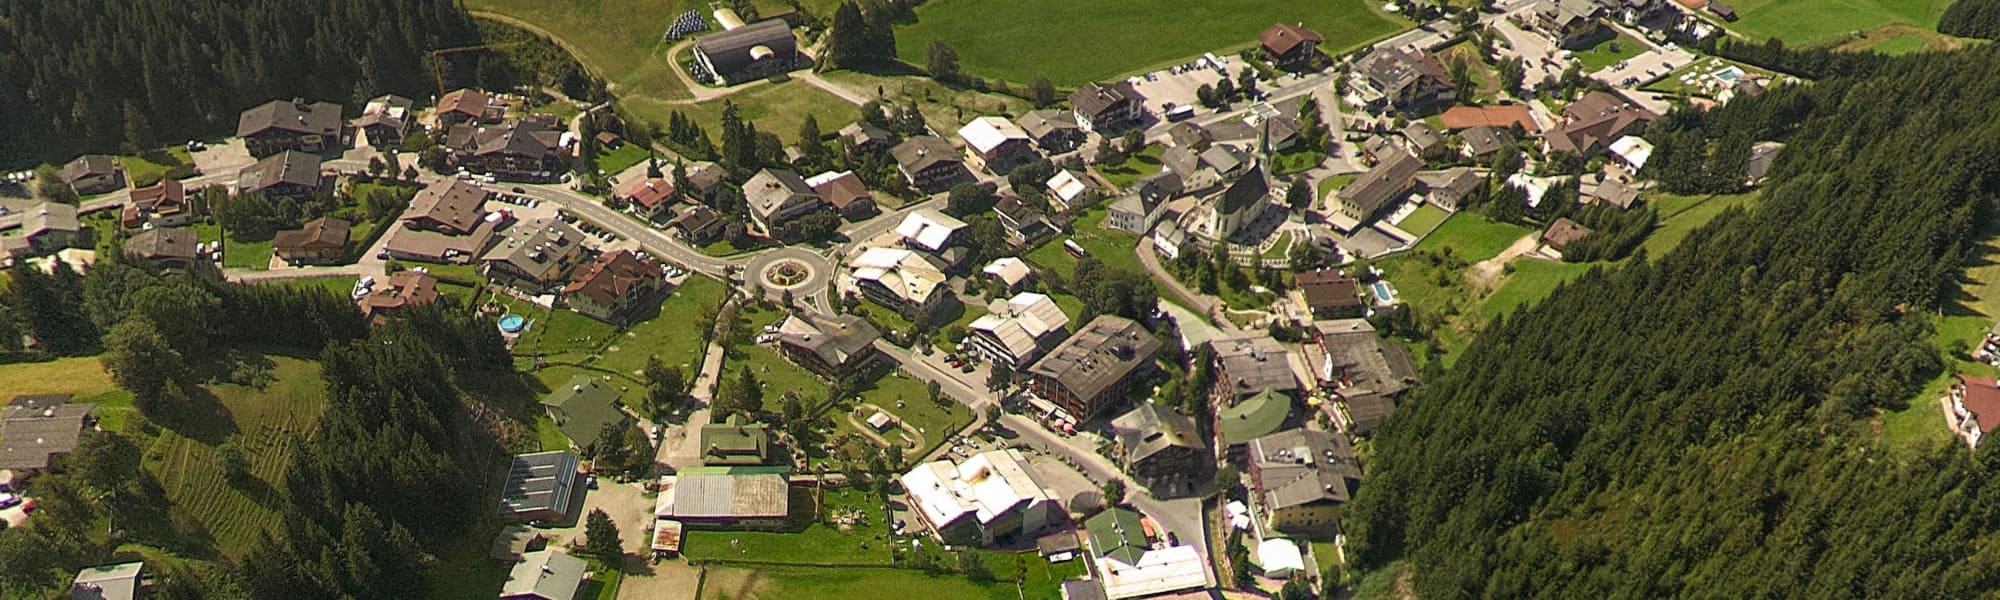 Lage der Hanneshof Resort Betriebe im Urlaubsort Filzmoos